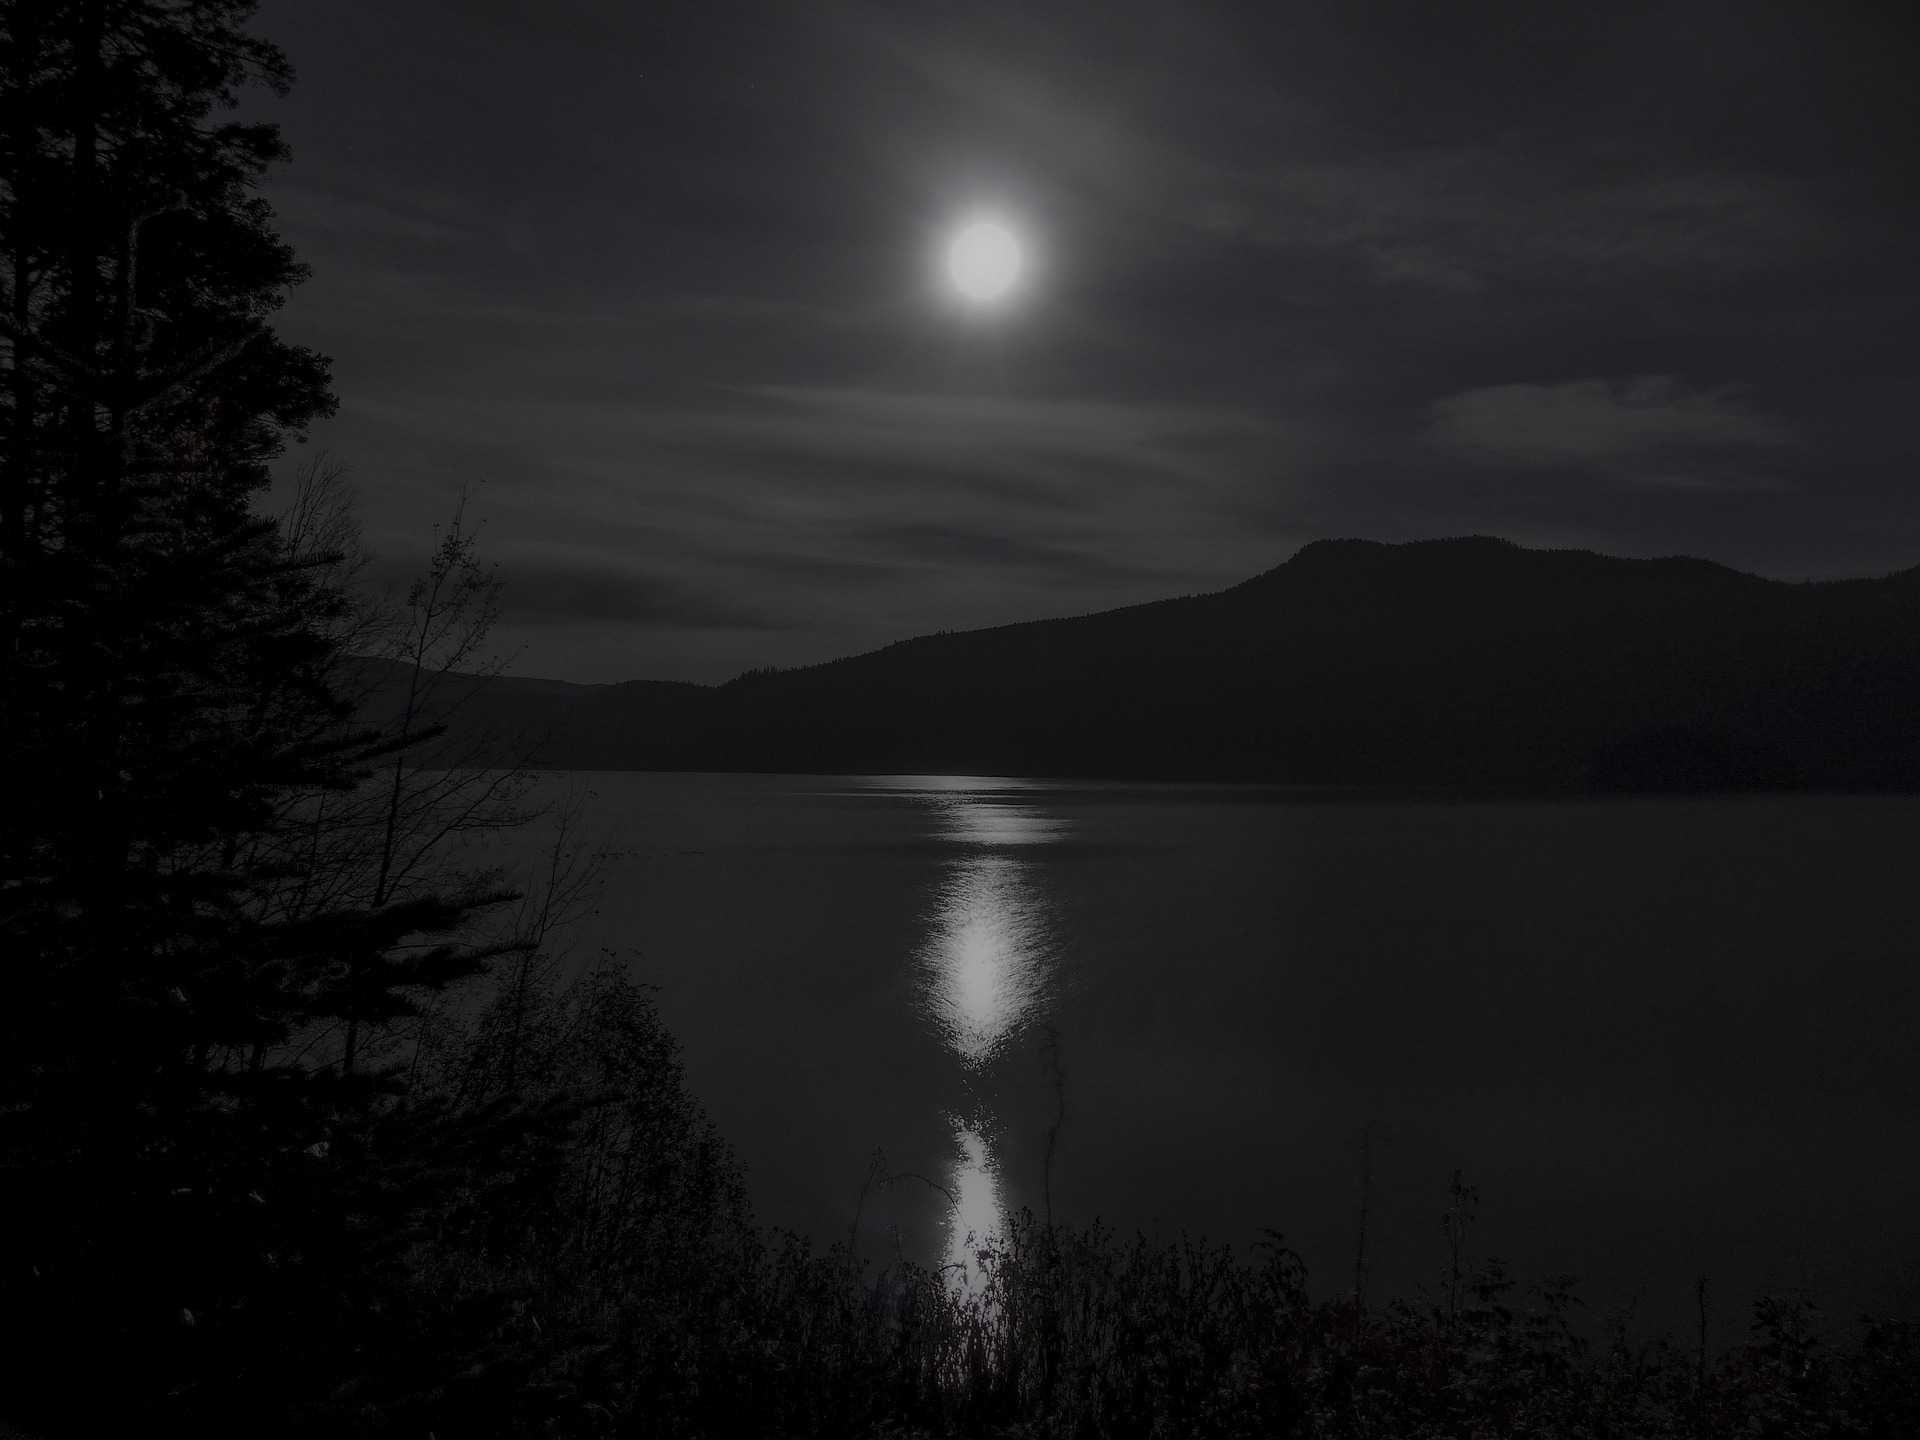 밤중에 달빛이 물 위에 비치는 사진입니다.